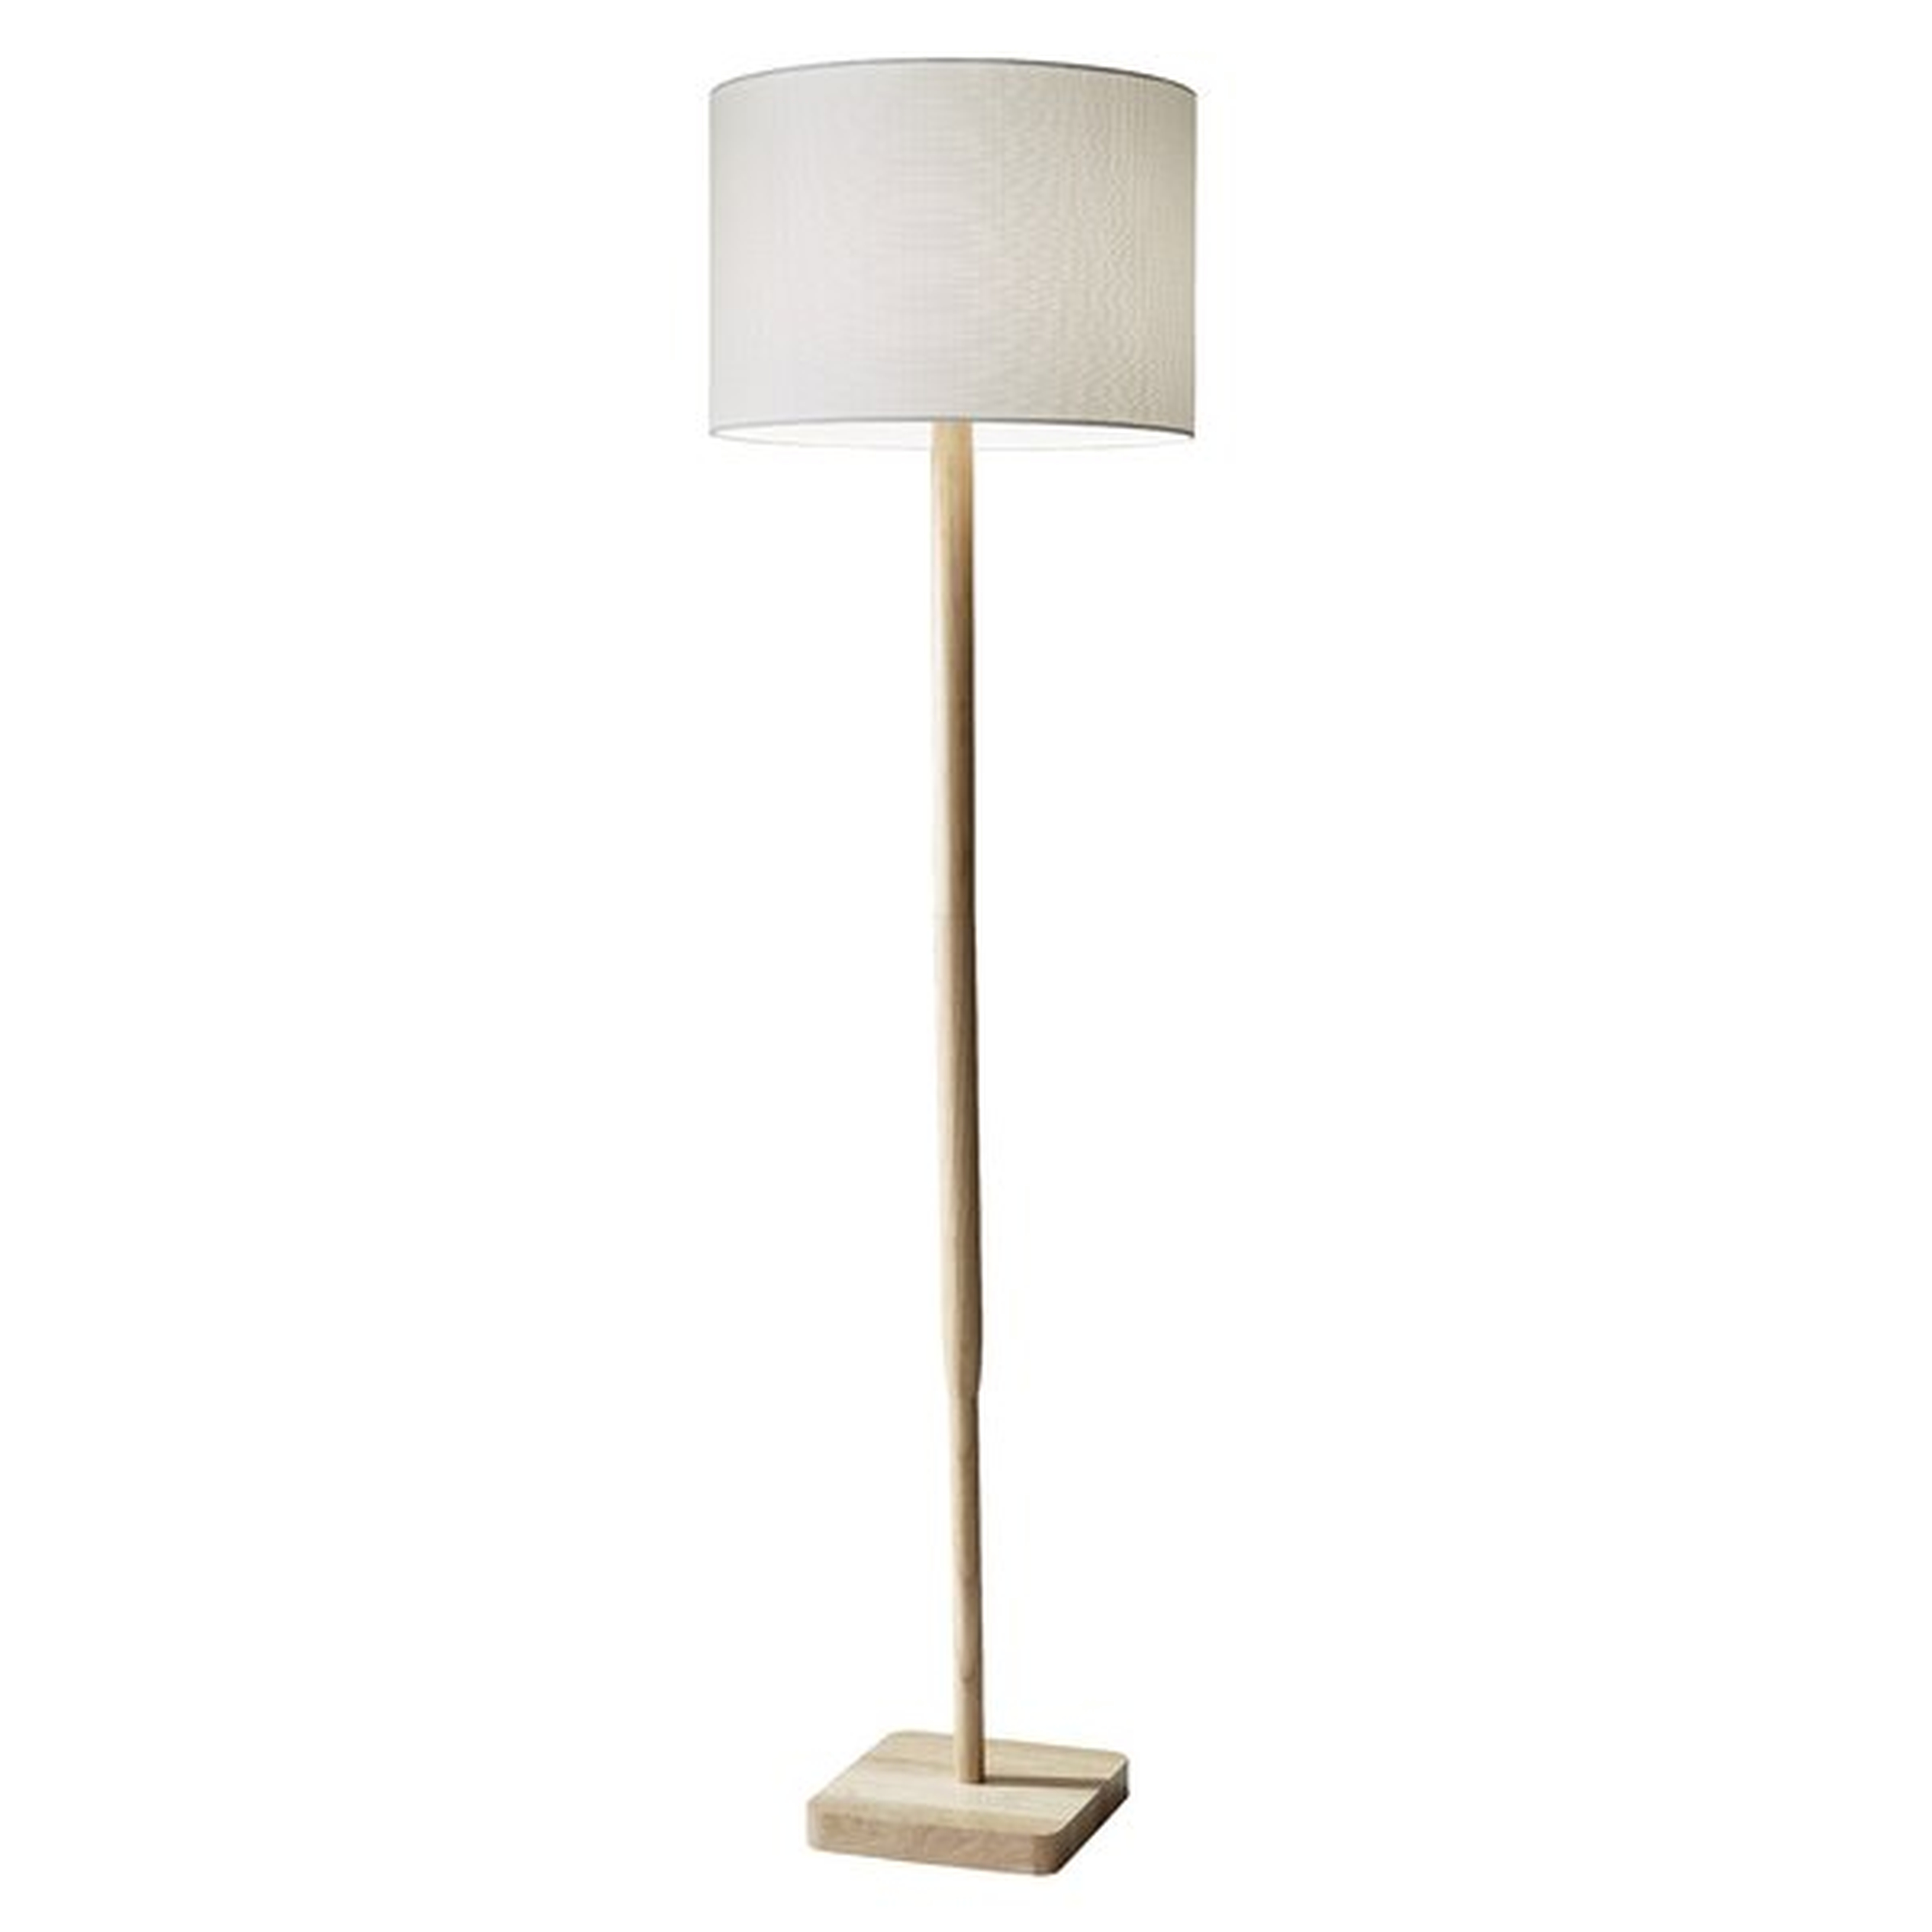 Ellis 58.5" Floor Lamp - Wayfair